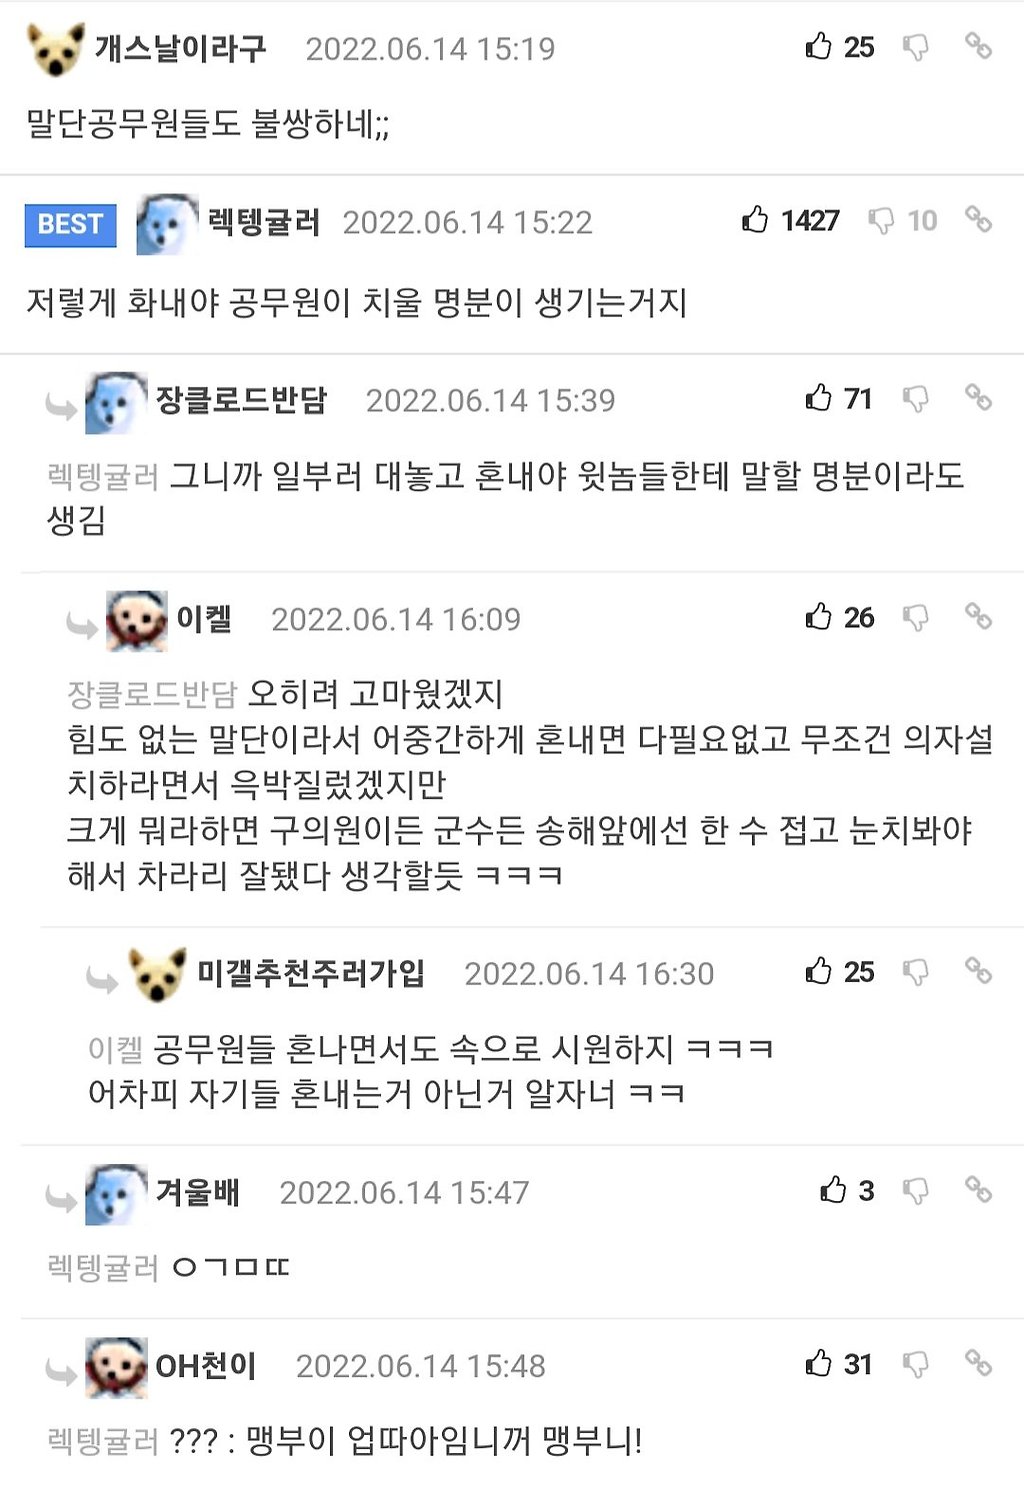 송해가 행사장 세팅하는 공무원 야단친 이유.jpg